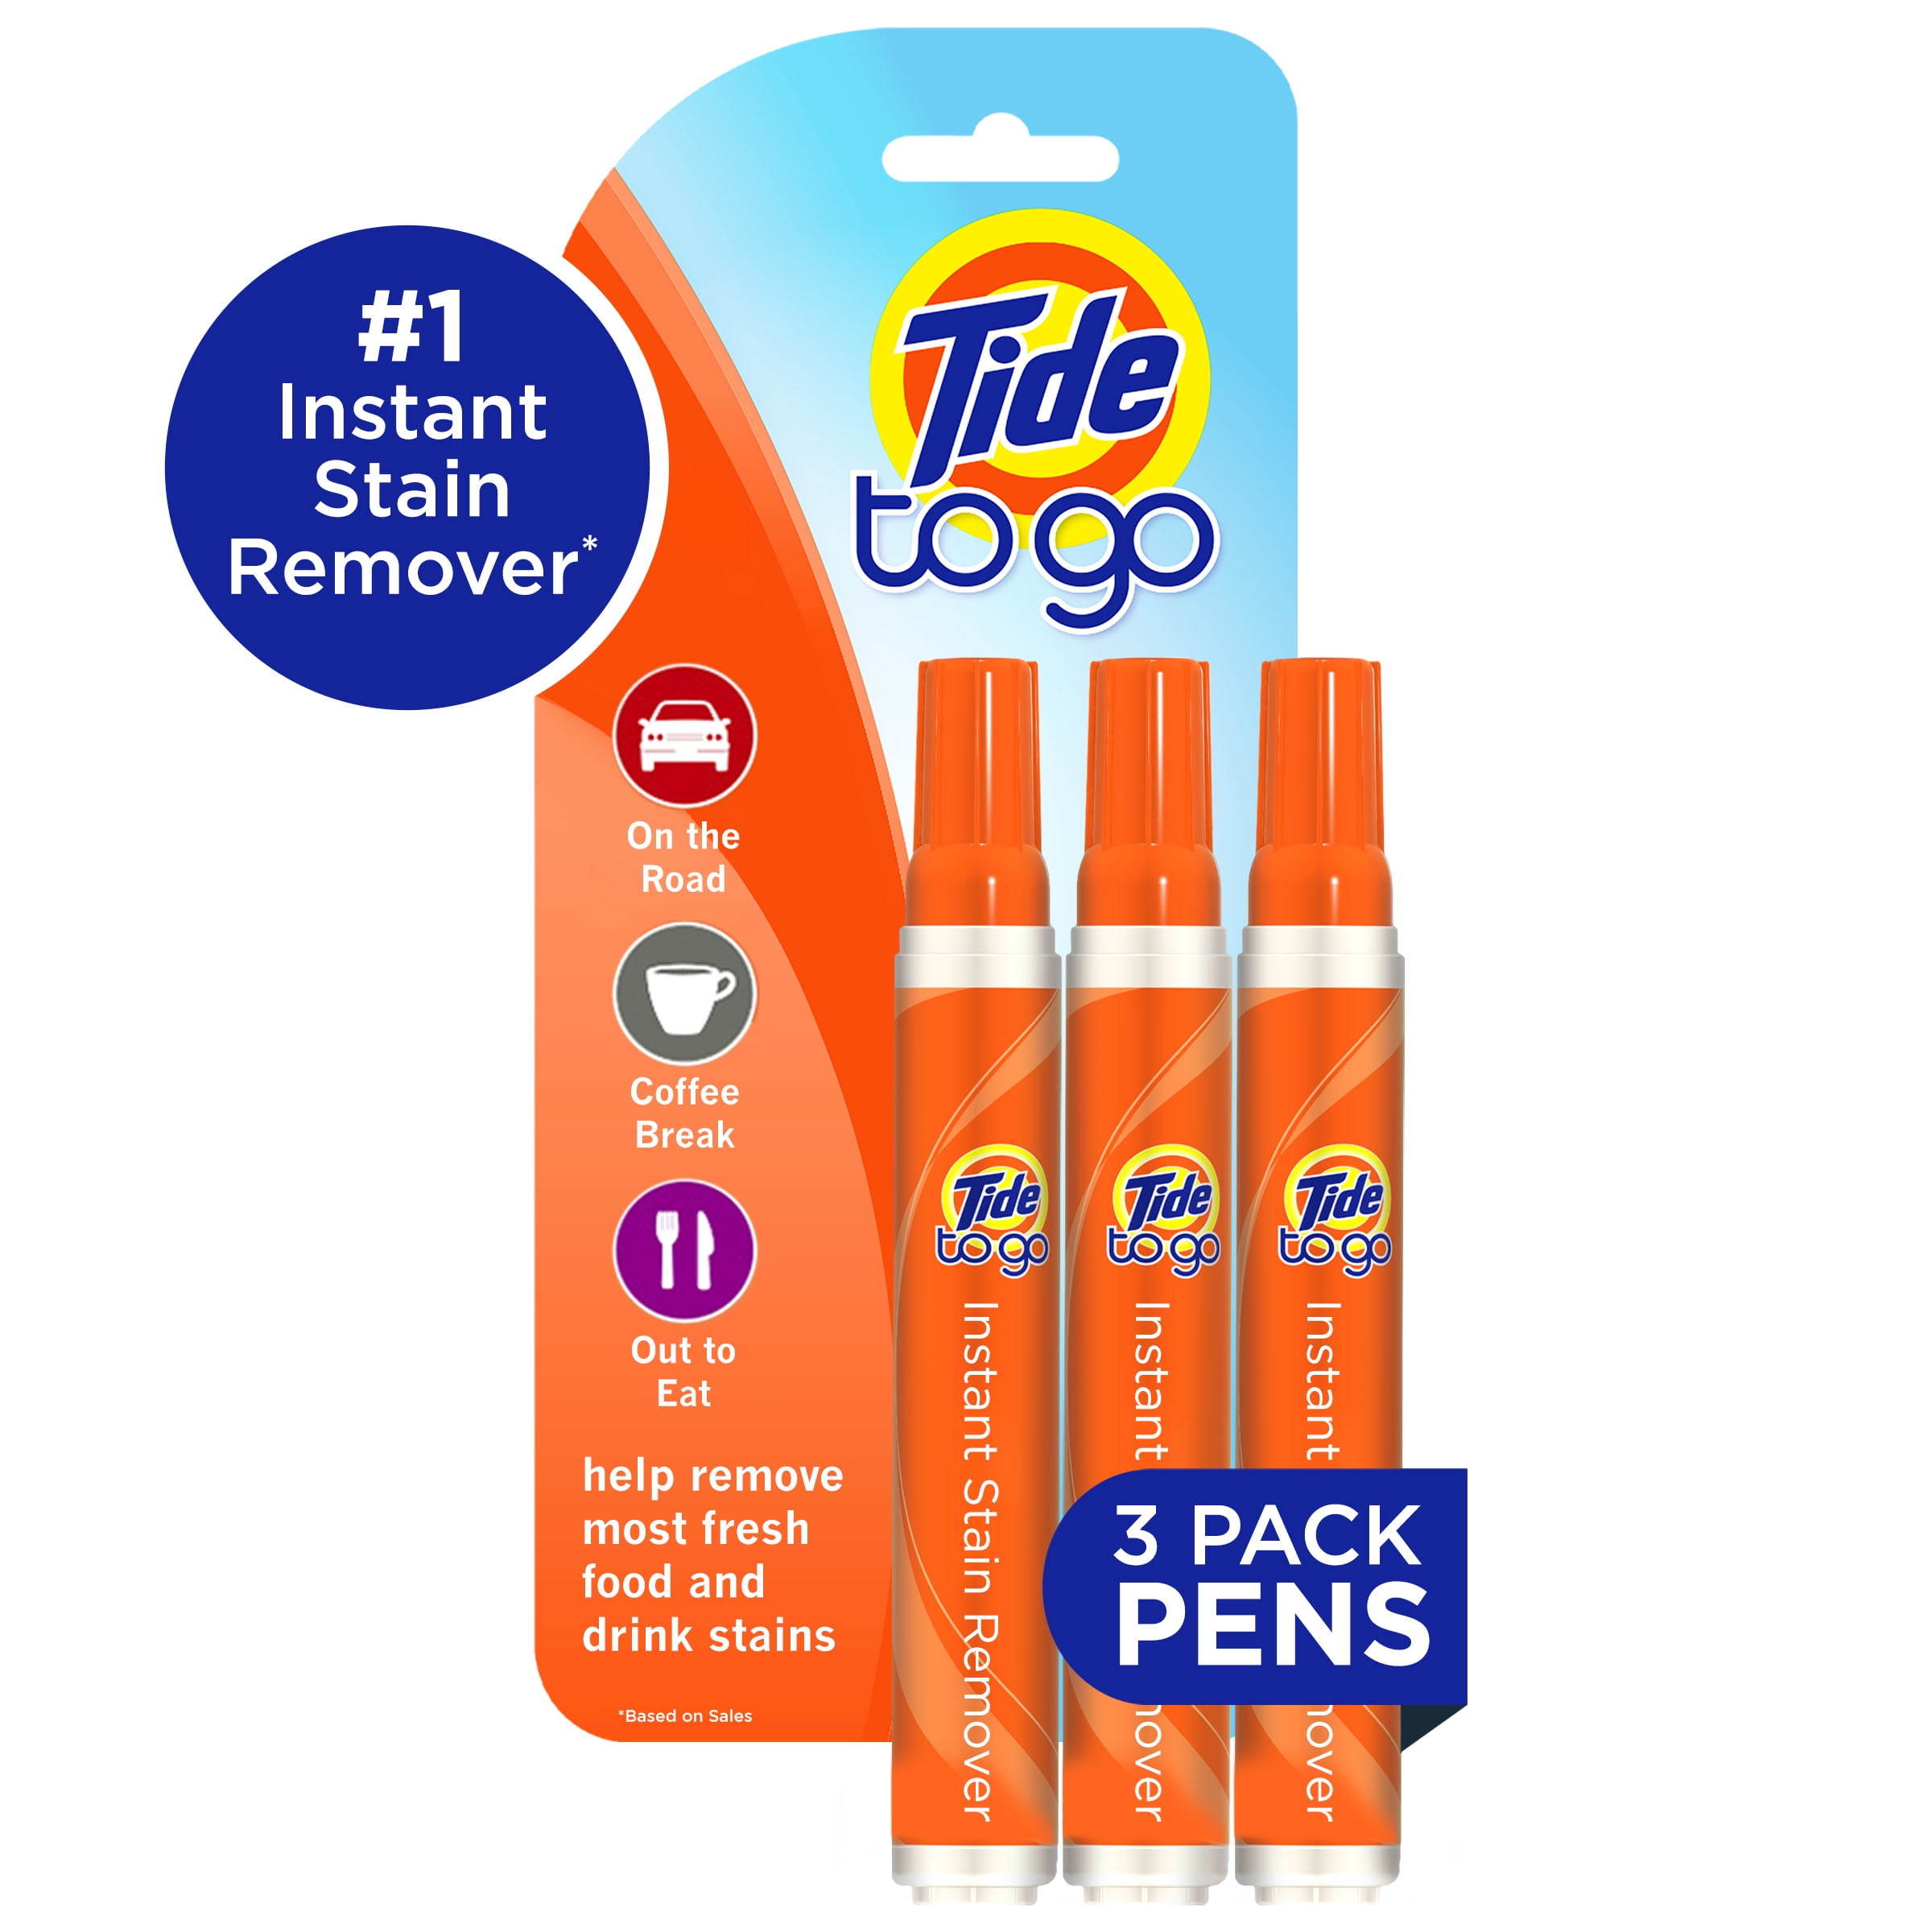 Tide to Go Pen $1.79 at Target